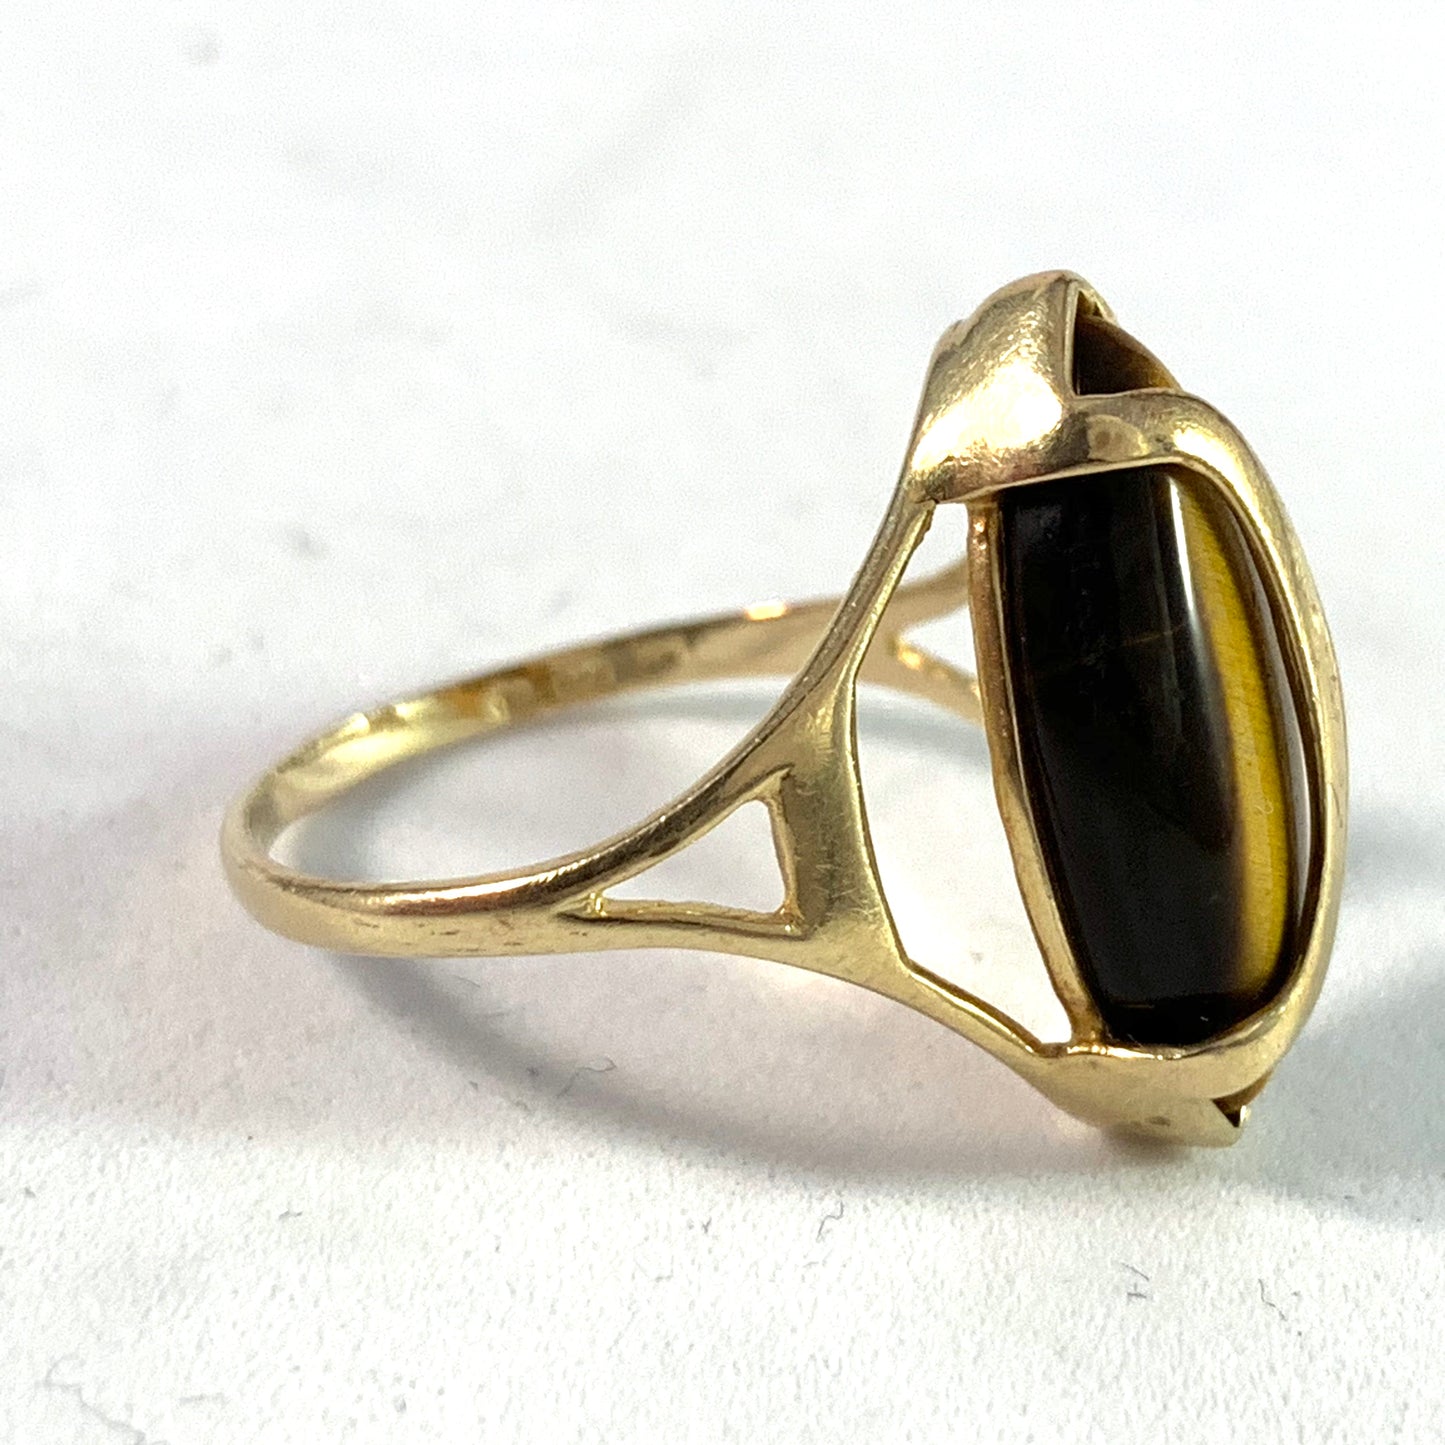 Modernist 14k Gold Tiger-Eye Ring. Maker's Mark.